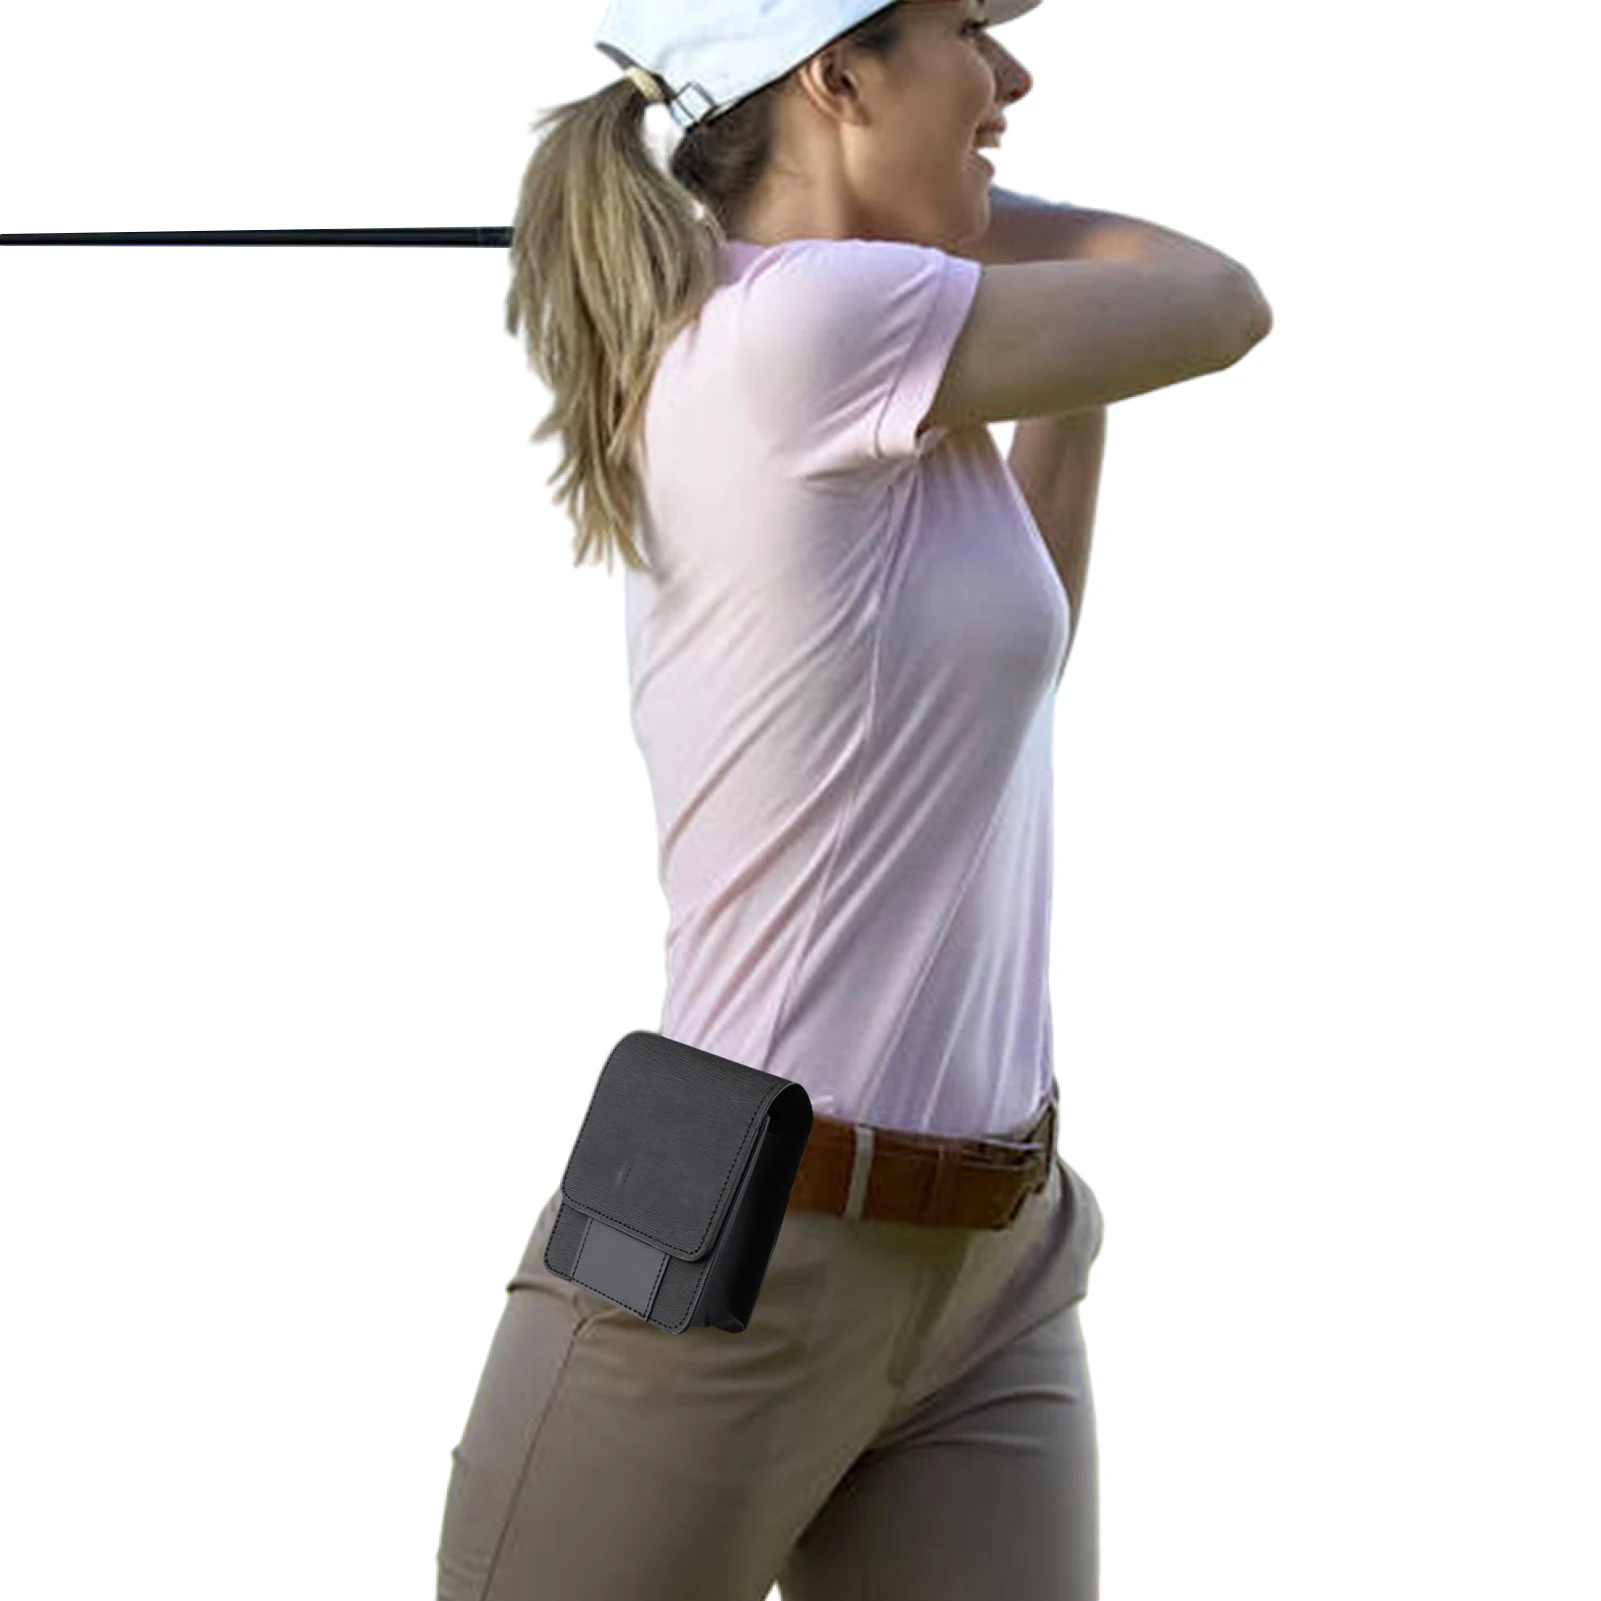 

Rangefinder Case Bag Range Finder Carry Bags For Golfing Rangefinder Waist Bag With Magnetic Closure Pocket Essential Accessory